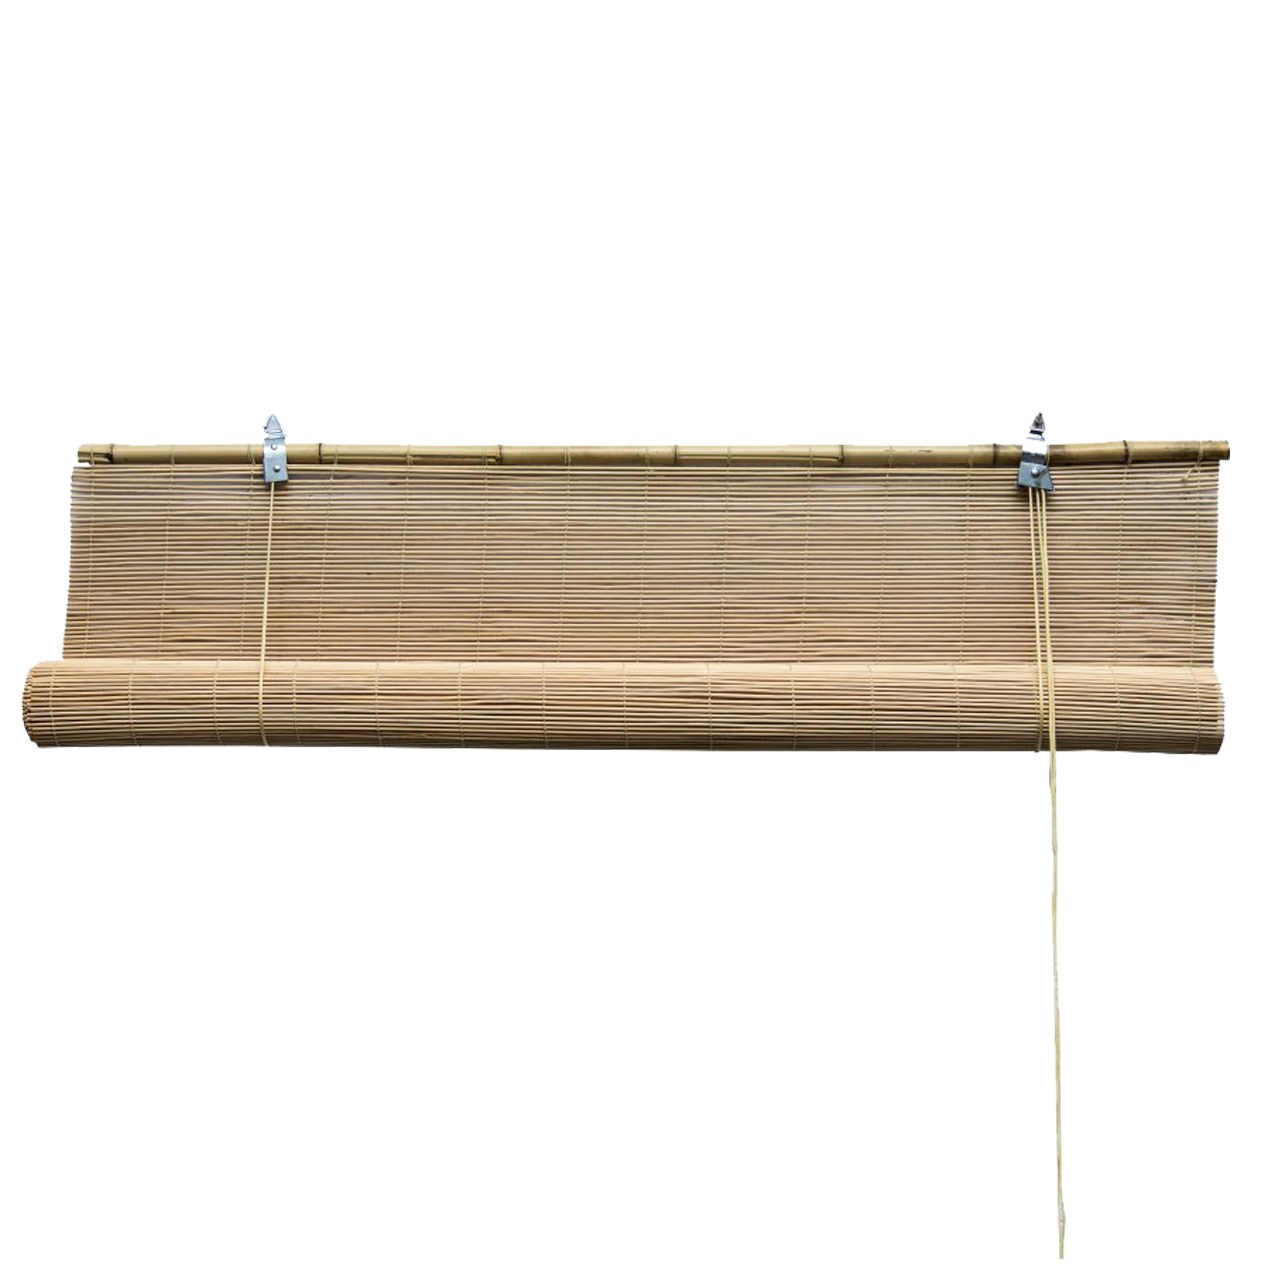 حصیر کرکره ایی چوبی دیزوم مدل Hasir150